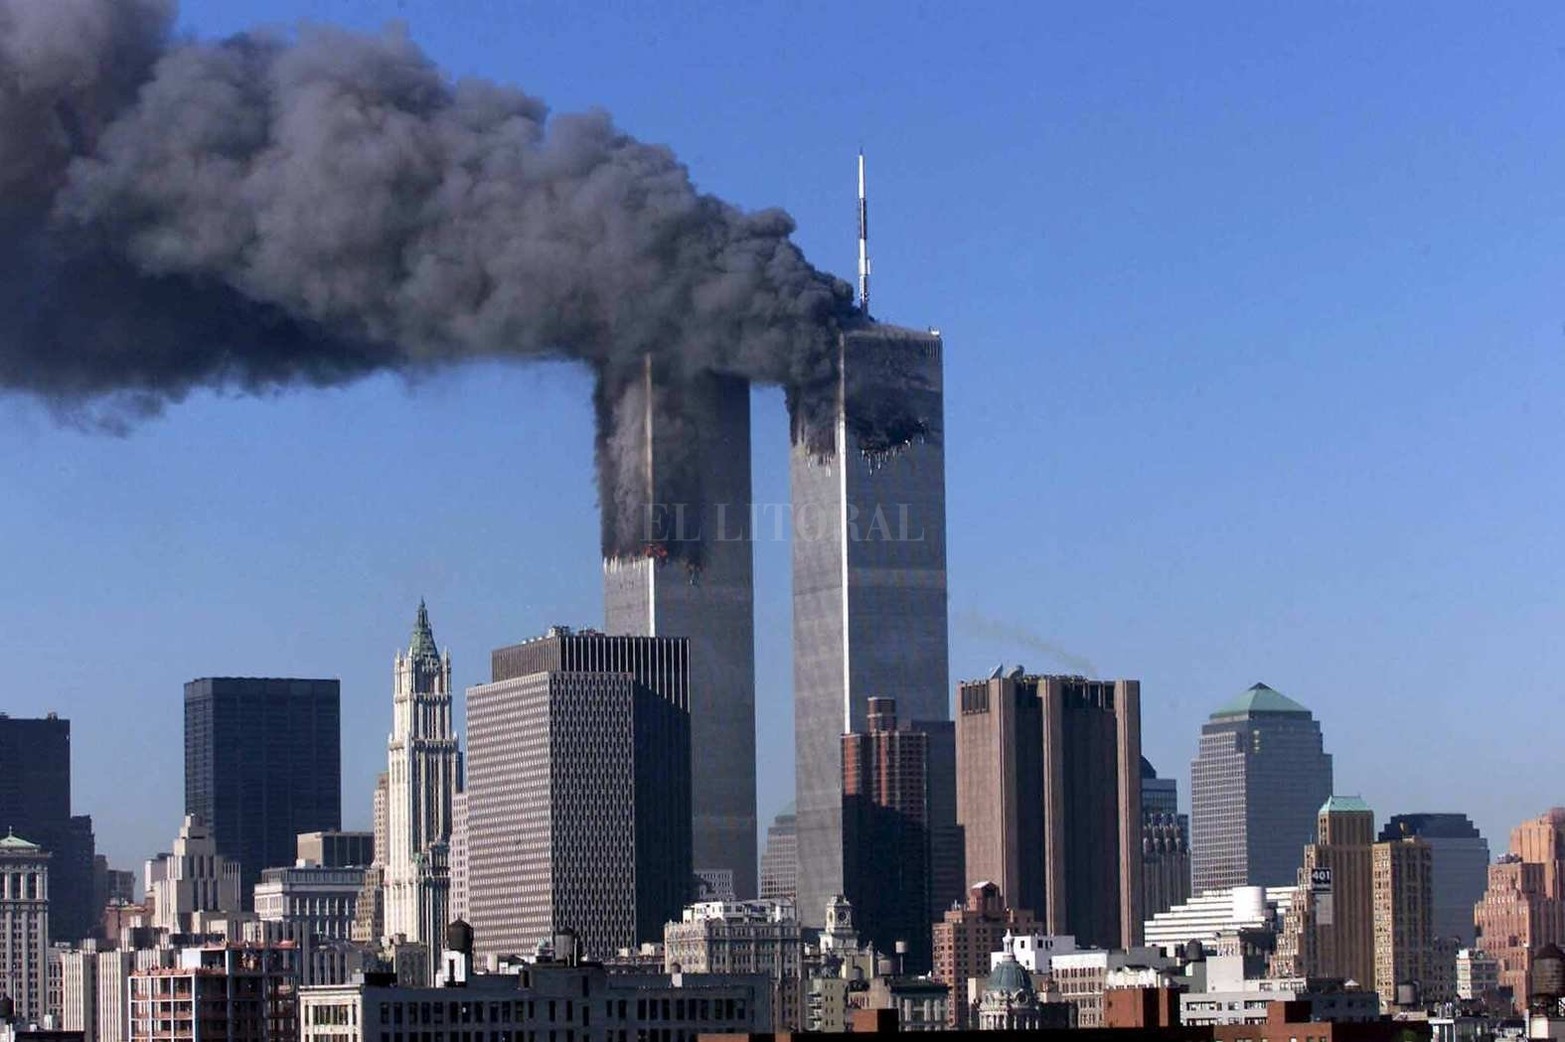 El martes 11 de septiembre de 2001, cuatro atentados terroristas suicidas en los Estados Unidos conmocionaron al mundo. Uno de los lugares fue el Centro del Comercio Mundial en Nueva York.  Causaron la muerte de 2.996 personas, incluidos los 19 terroristas, la desaparición de 24 víctimas y más de 25 mil heridos.